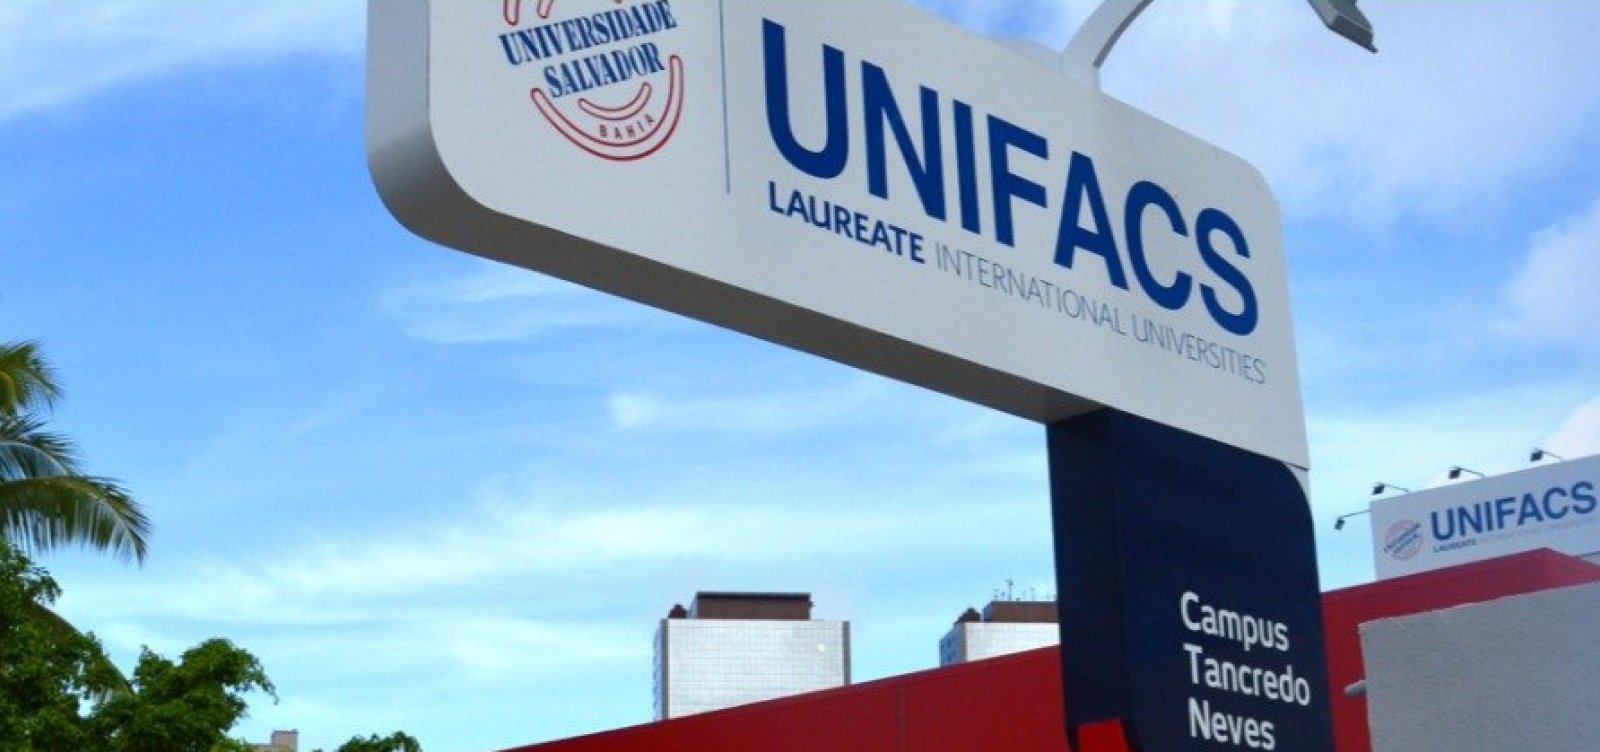 Alunos criticam falta de diálogo com a Unifacs e criam página para relatar "atrasos de vida"